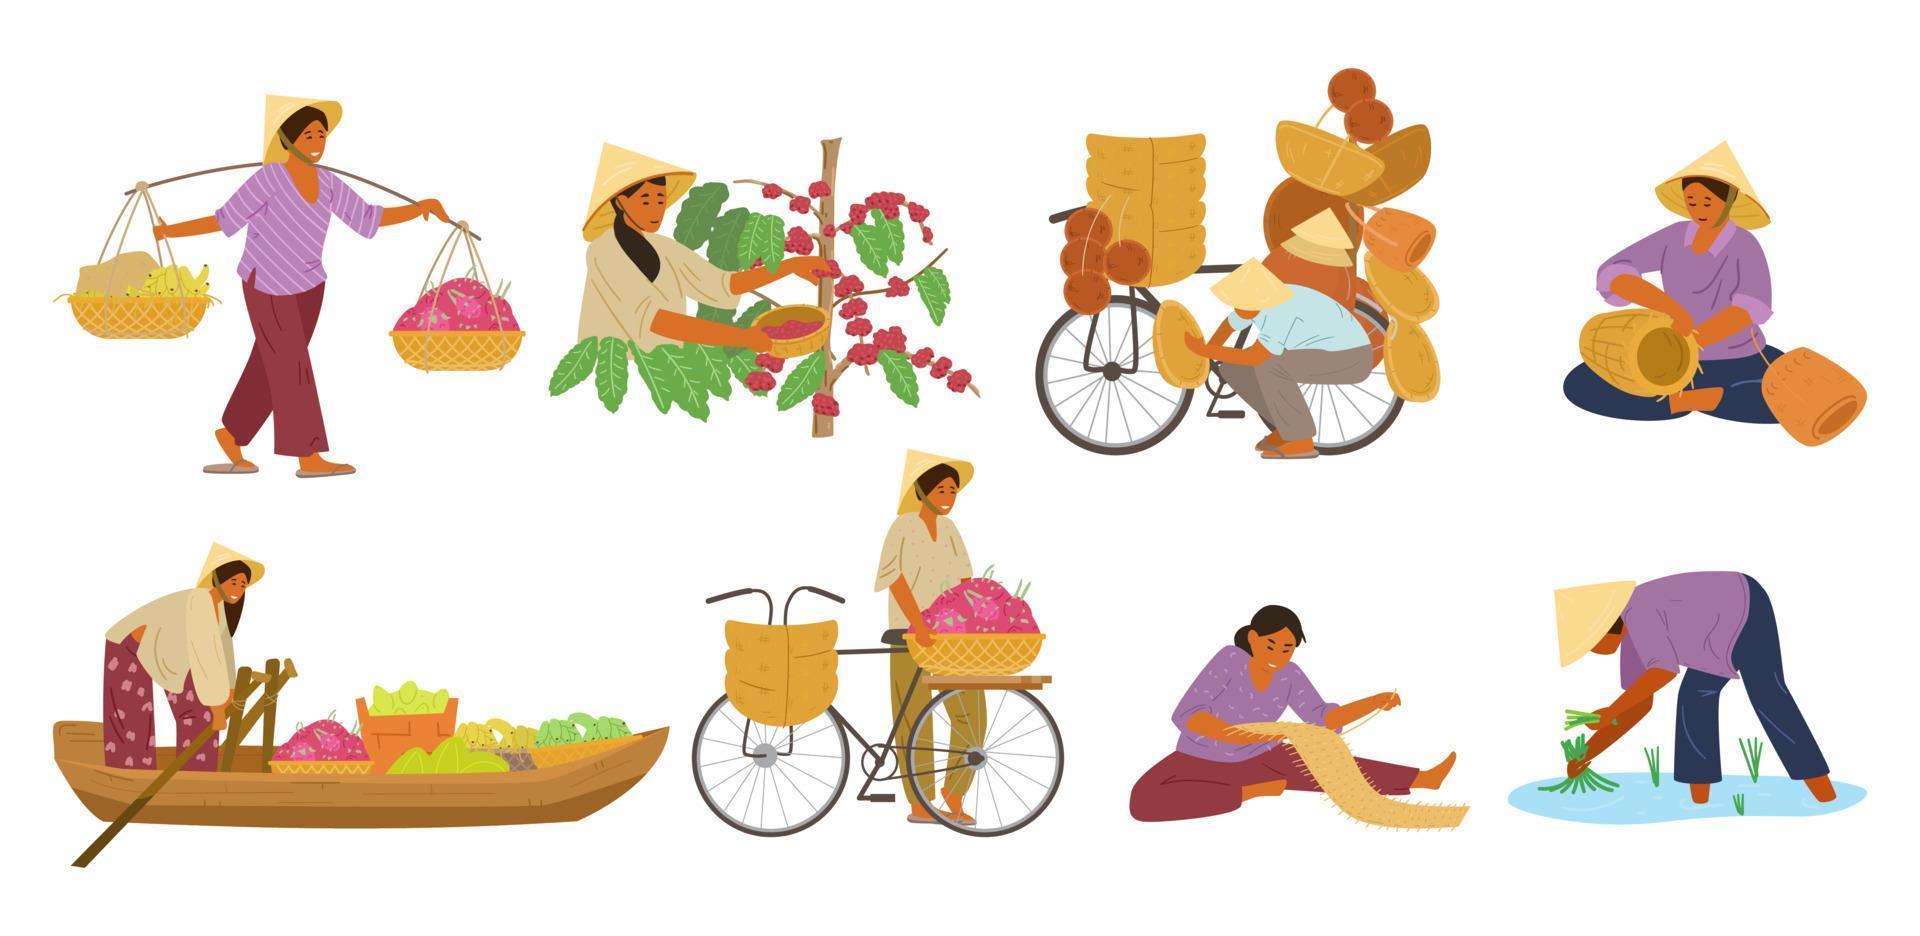 vektor uppsättning av asiatisk kvinnor i konisk sugrör hattar arbetssätt. bärande ok, skörd kaffe bönor, vävning korgar och matta, försäljning frukt från en båt och från cykel, arbetssätt på ris fält.